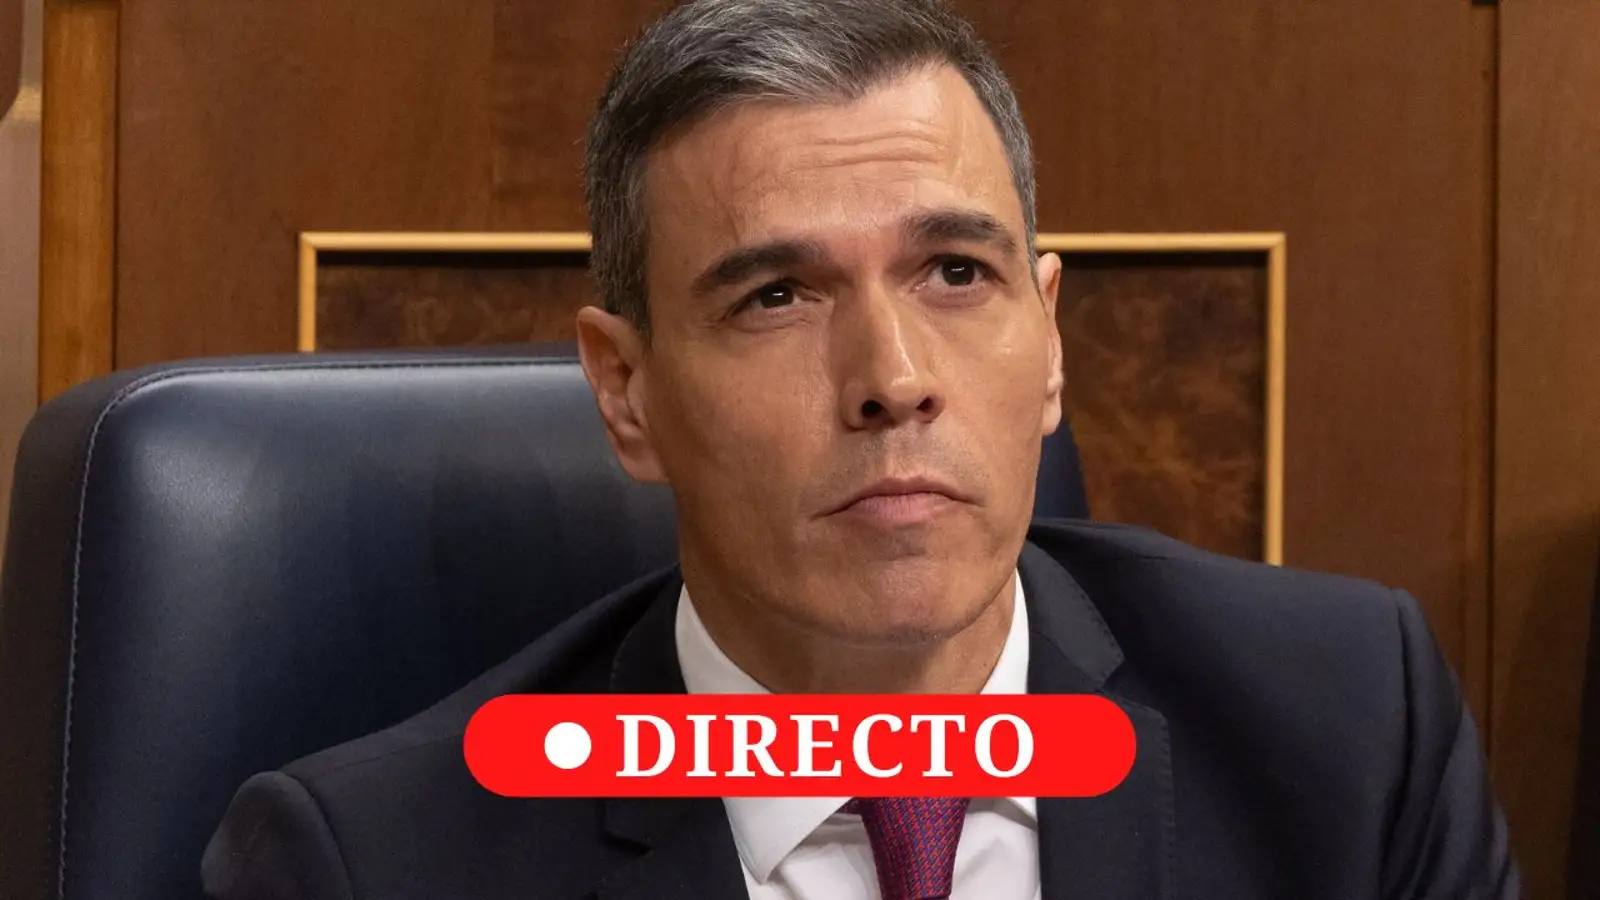 La decisión de Sánchez, en directo: la comparecencia del presidente será a las 11:00 horas